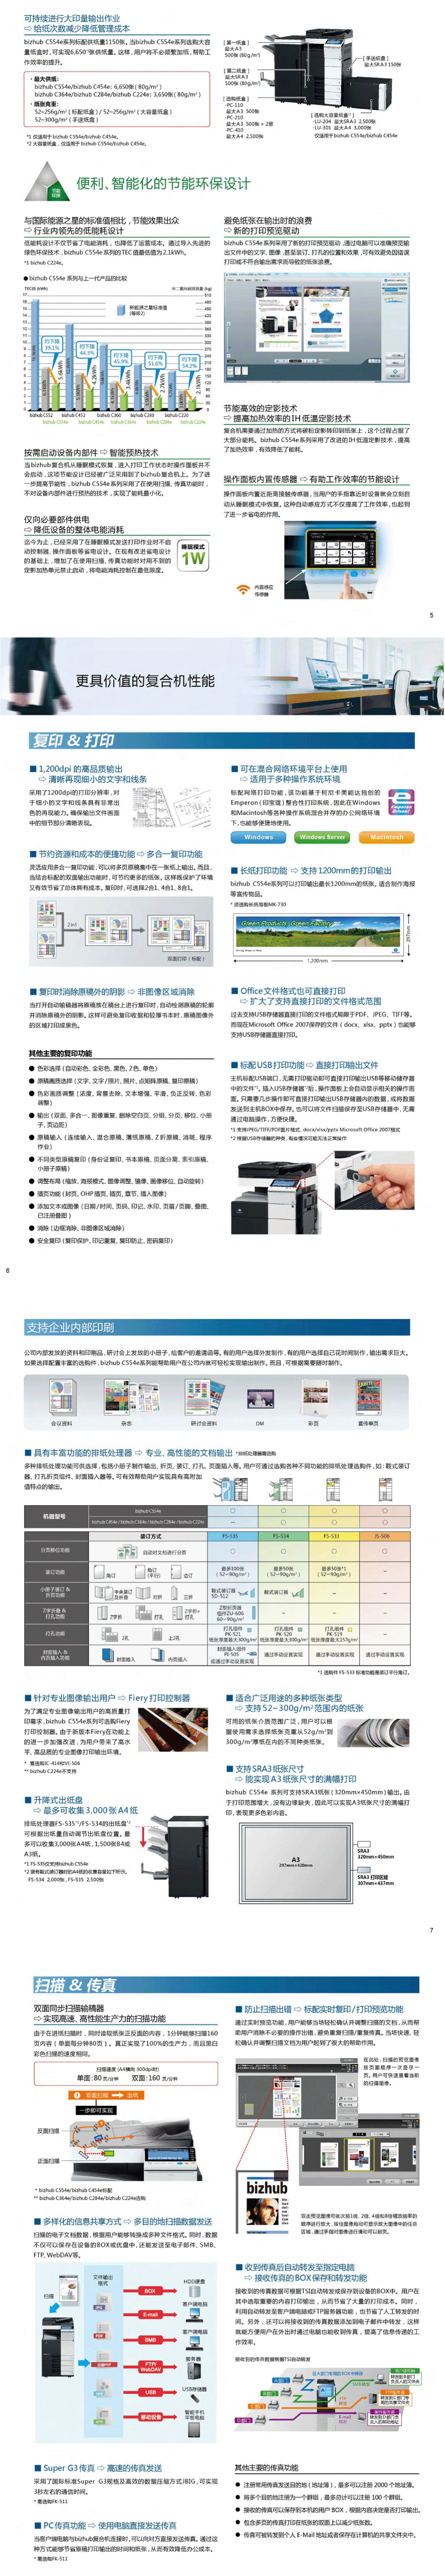 柯尼卡美能达 bizhub C554e A3 彩色多功能复合机 打印/复印/扫描 互联网传真 标配双面输稿器 2纸盒